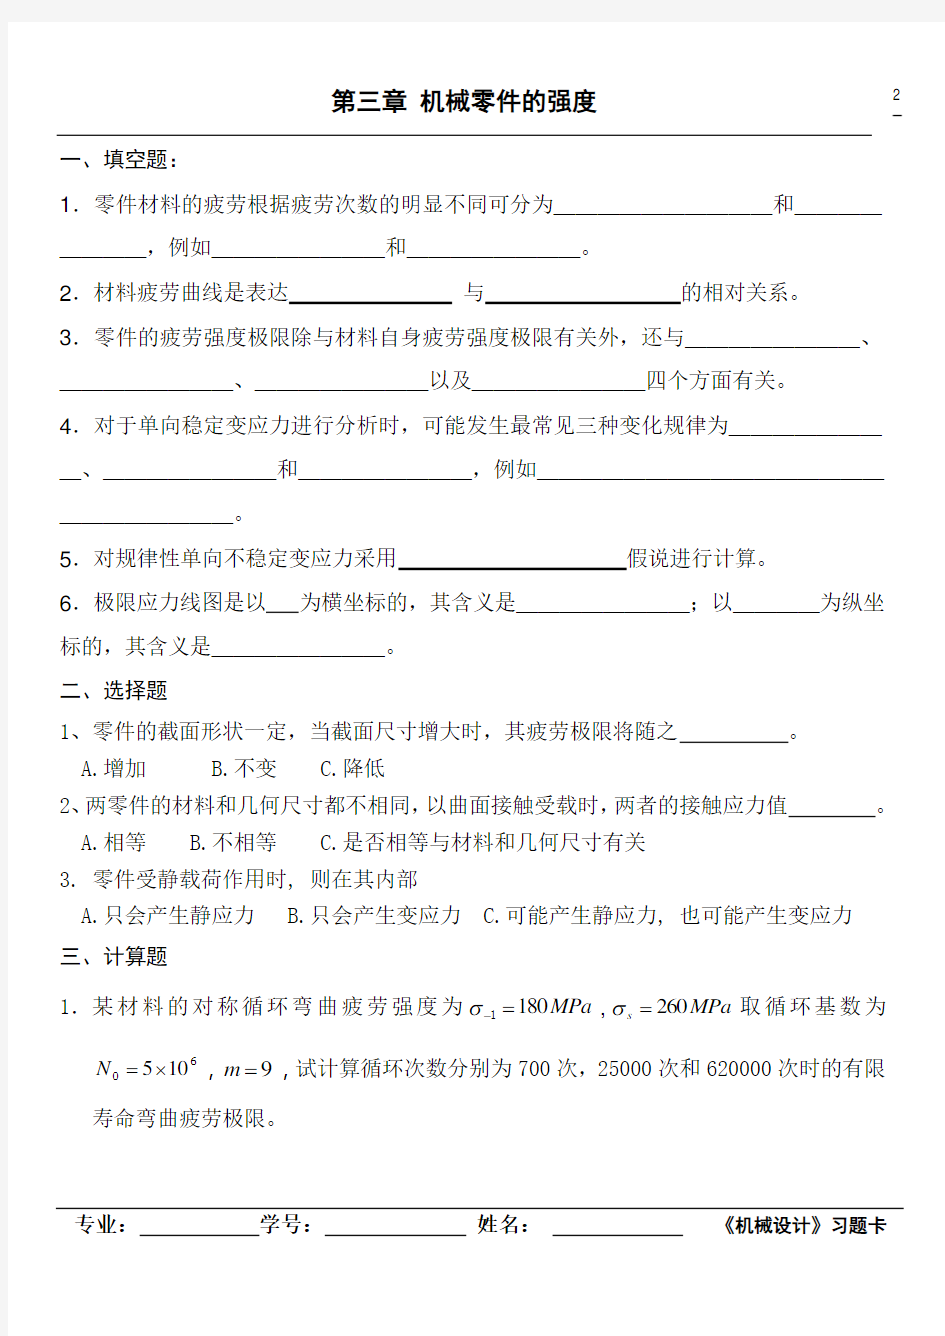 2013浙江工业大学机械设计习题卡(上)